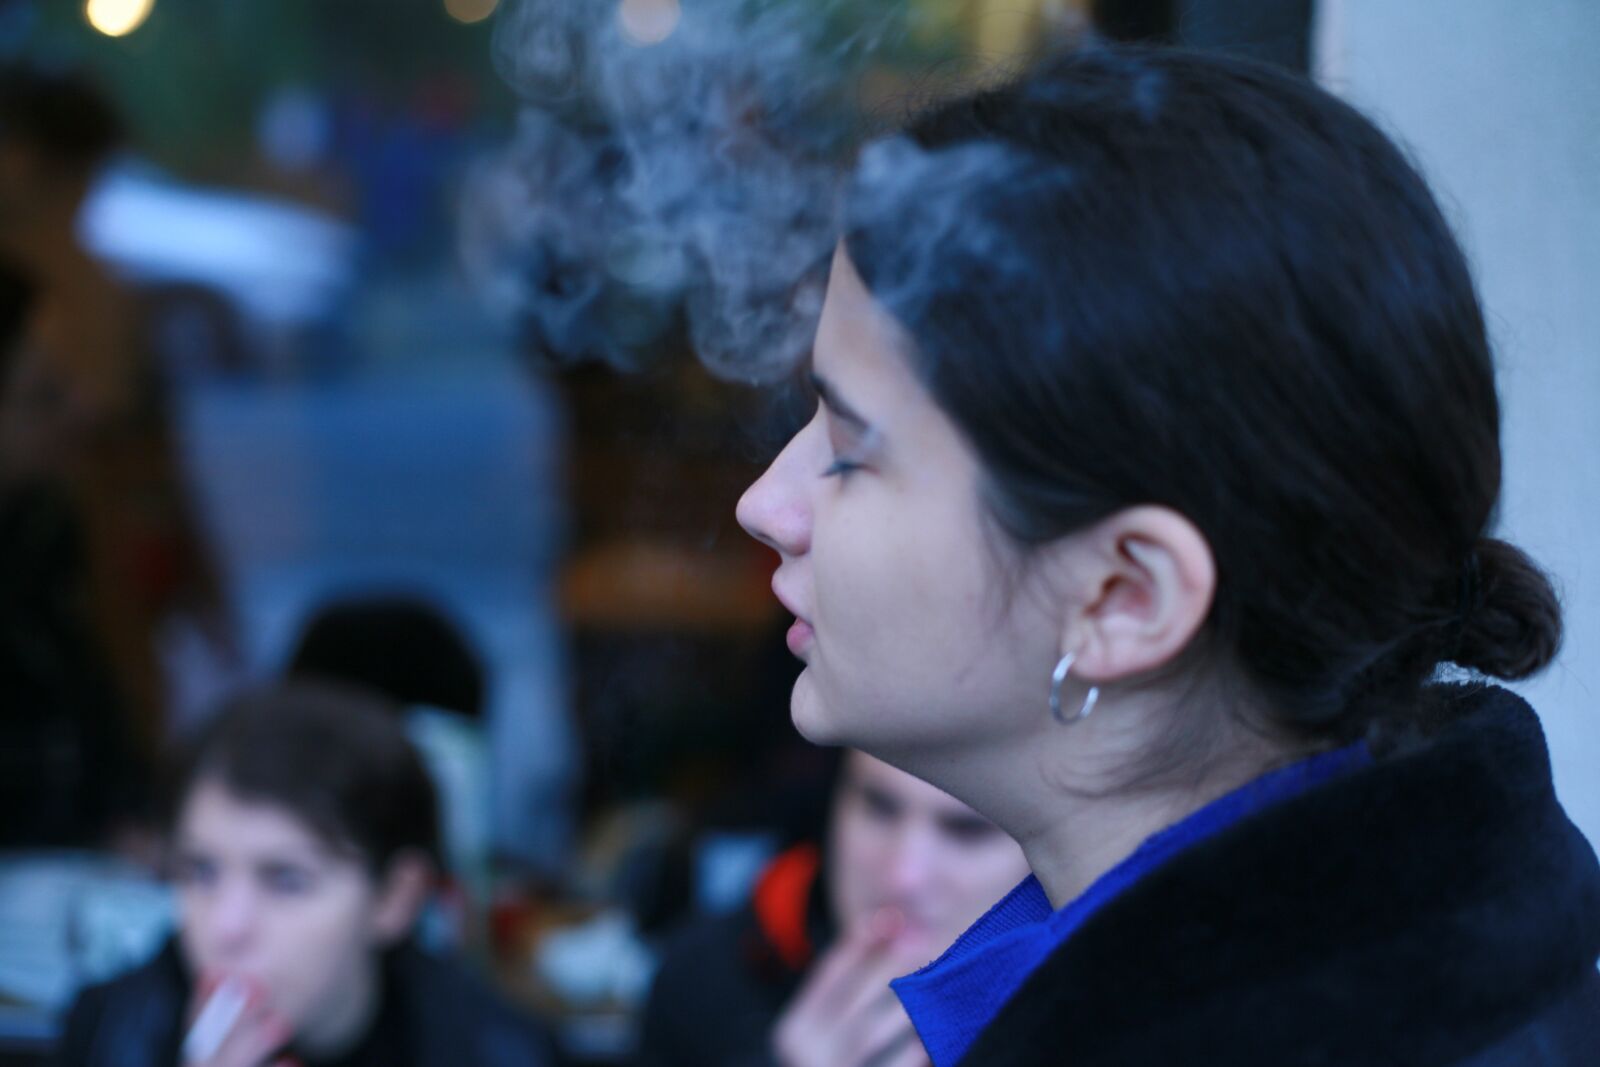 Canon EOS 5D sample photo. Smoker, girl, cigarette photography